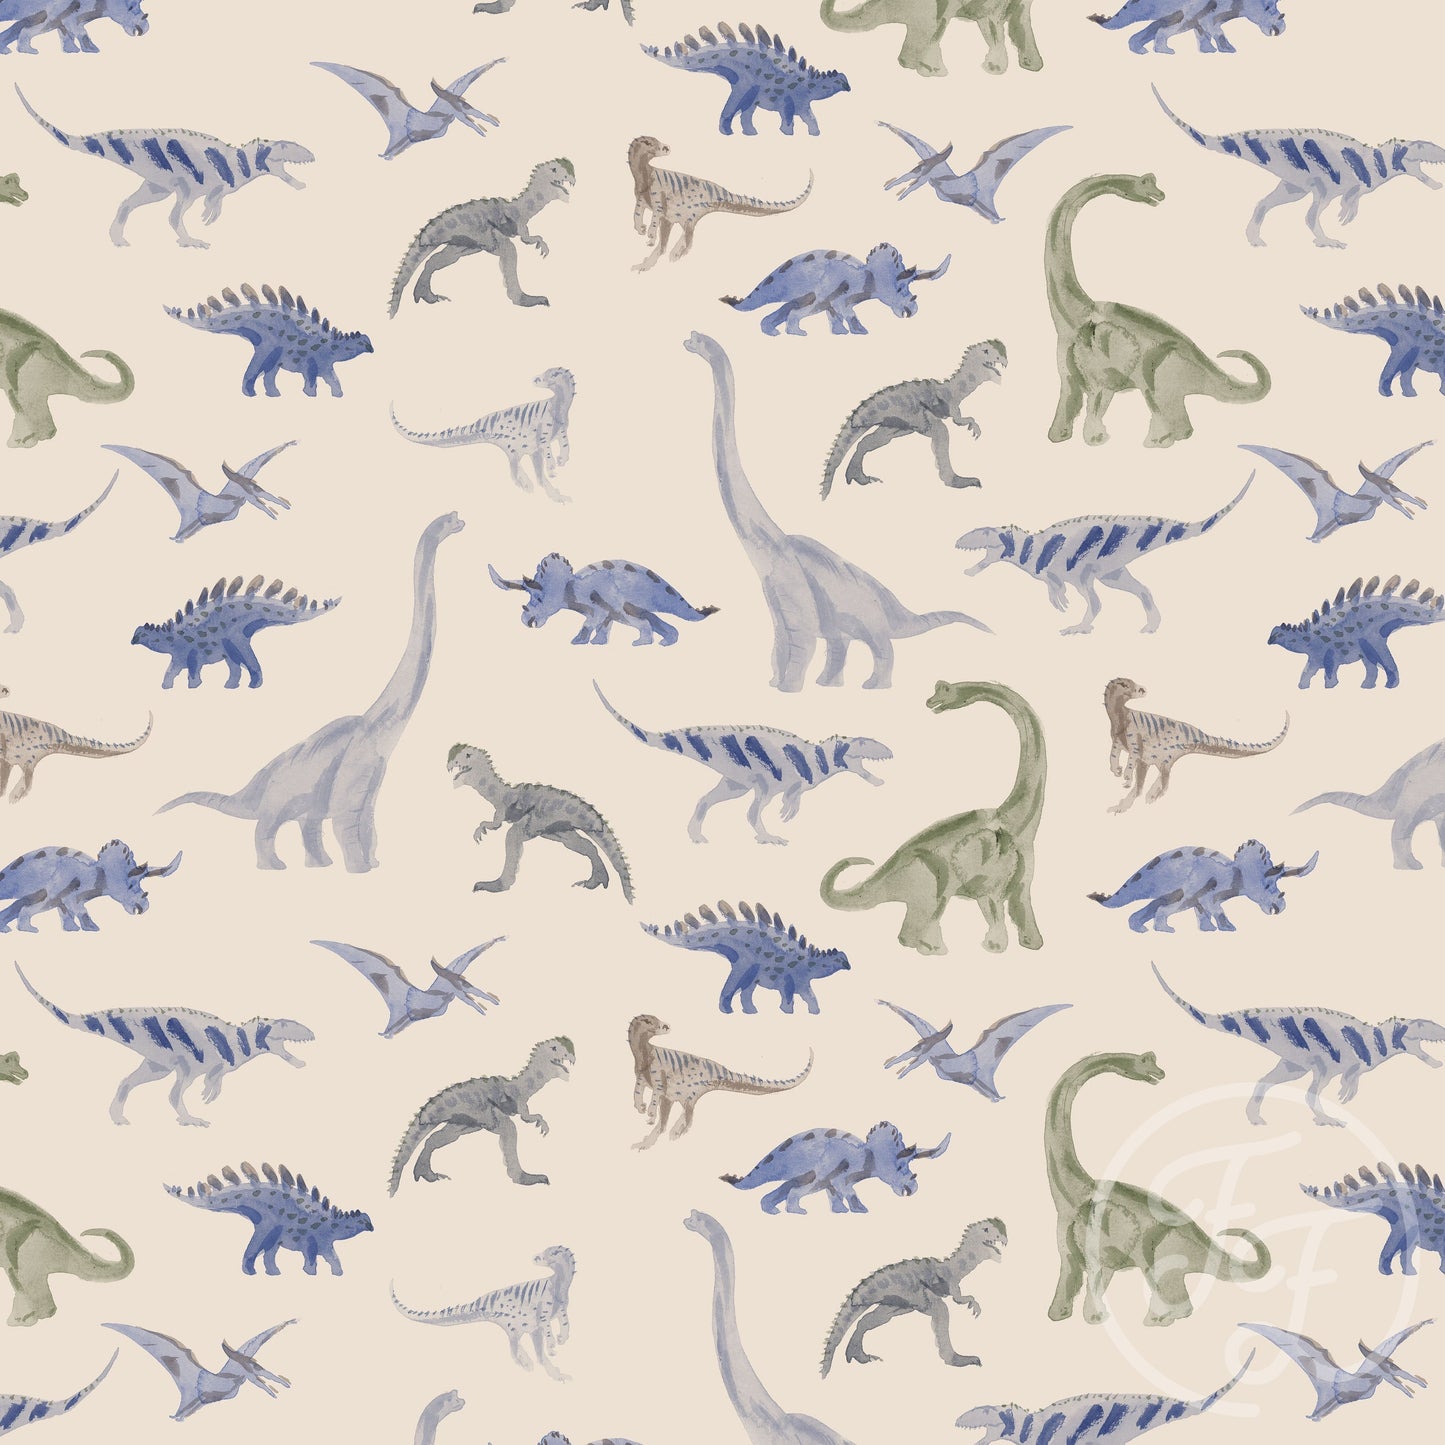 Family Fabrics | Dinosaur Blue Small